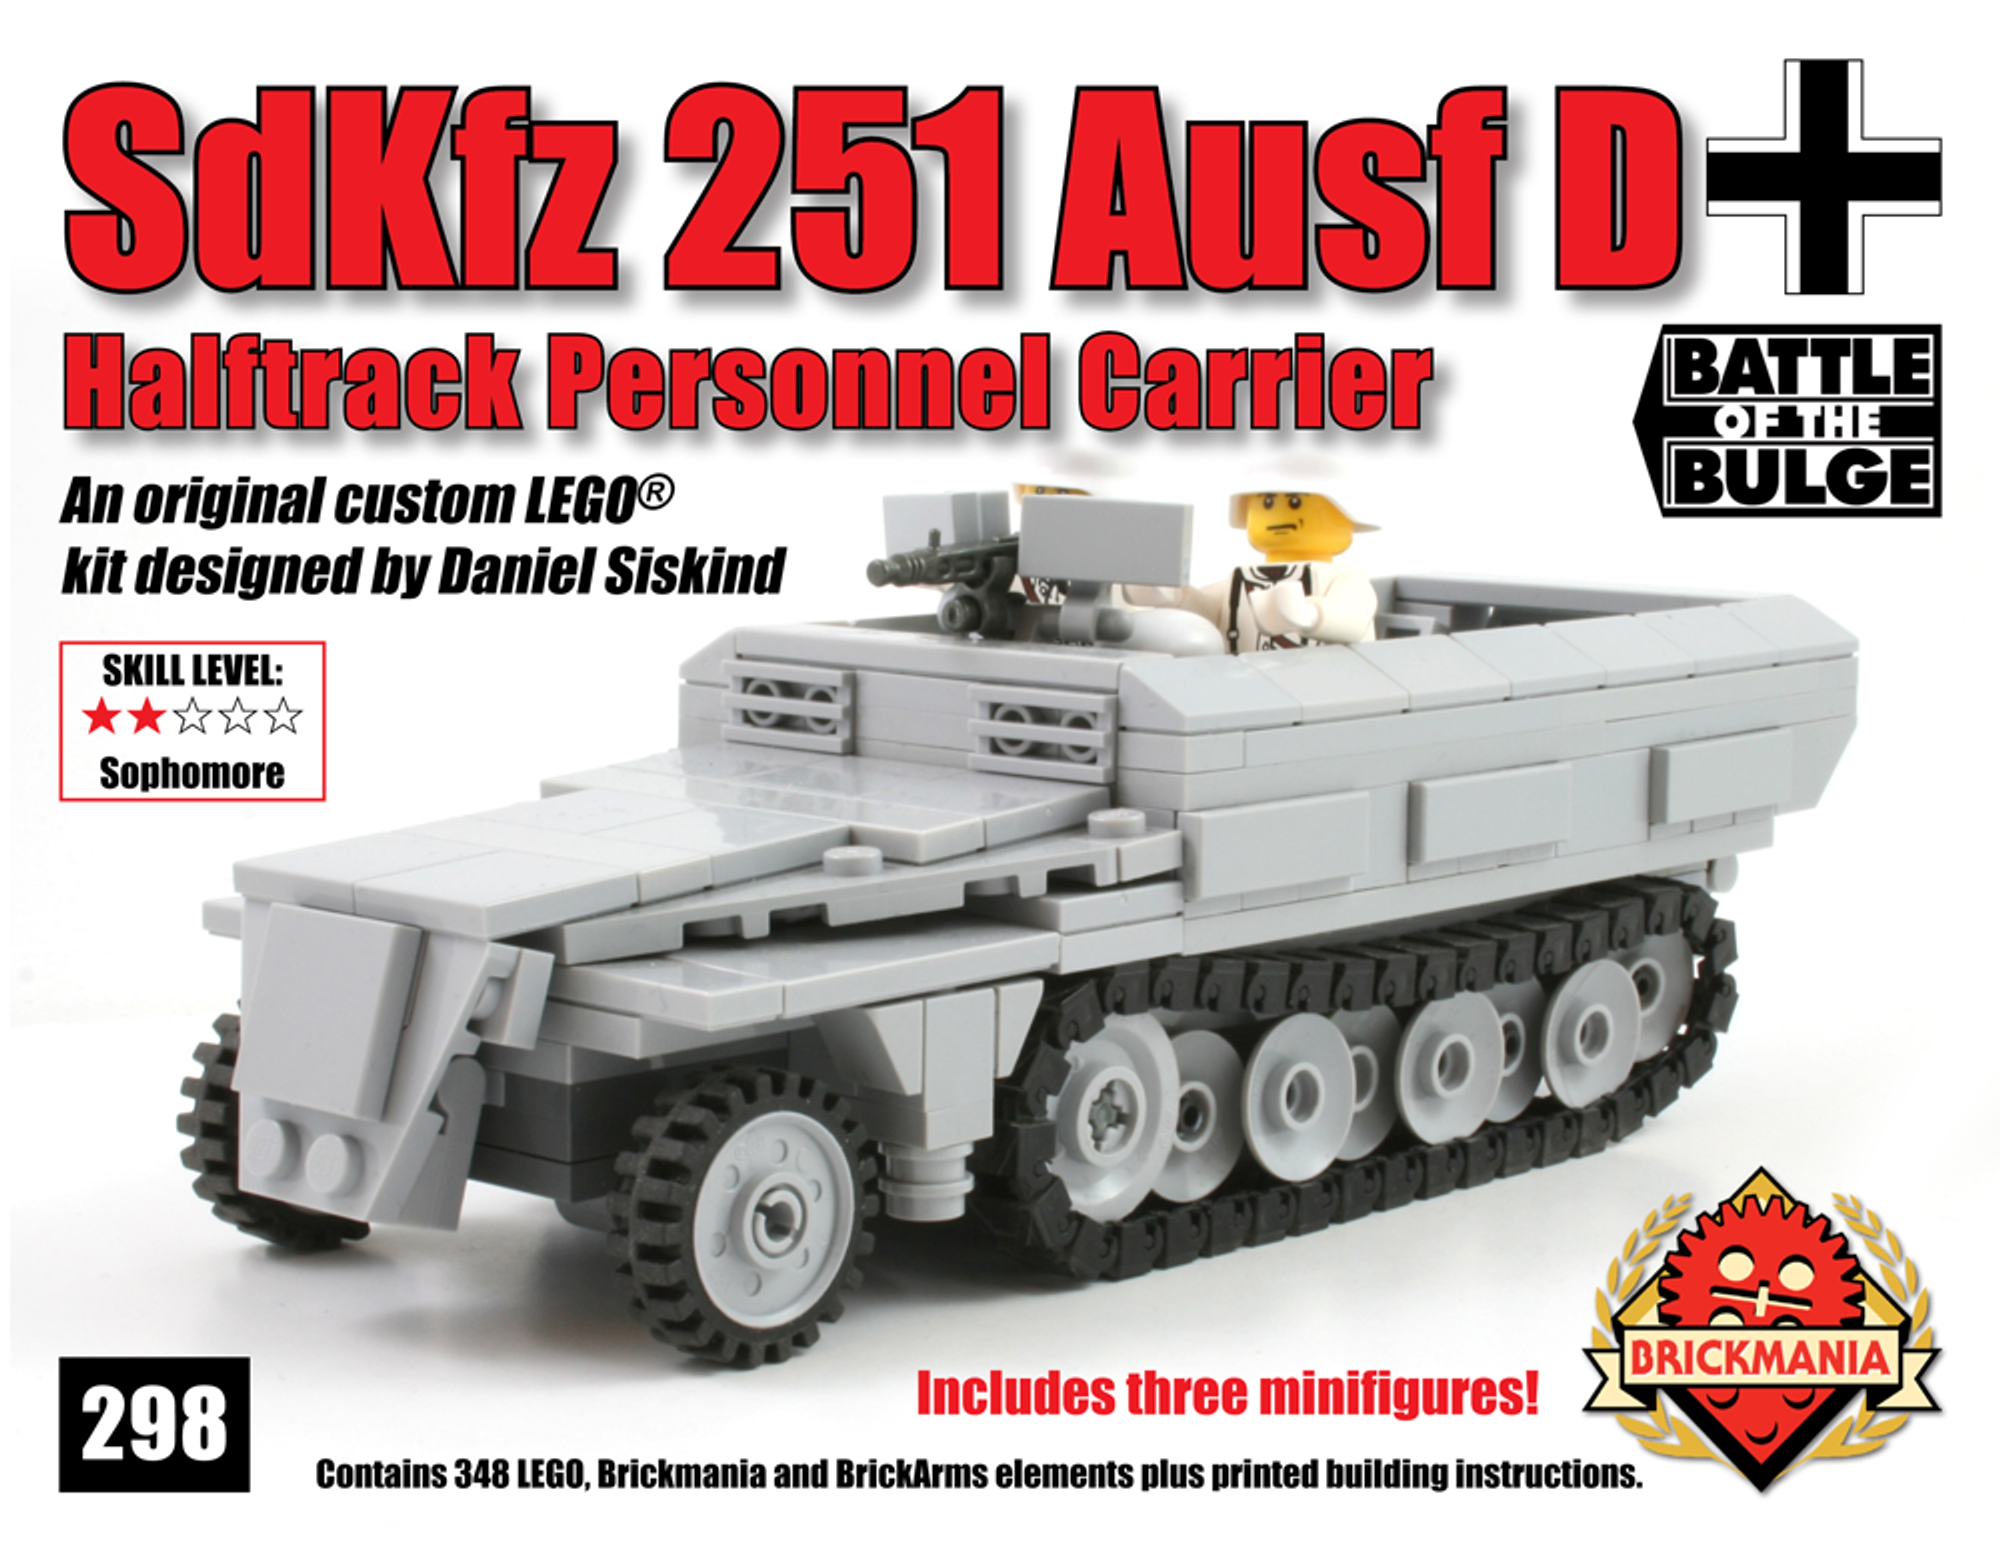 22000円でどうでしょうかbrickmania製 WW2ドイツ軍SDKFZ 251 AUSF D